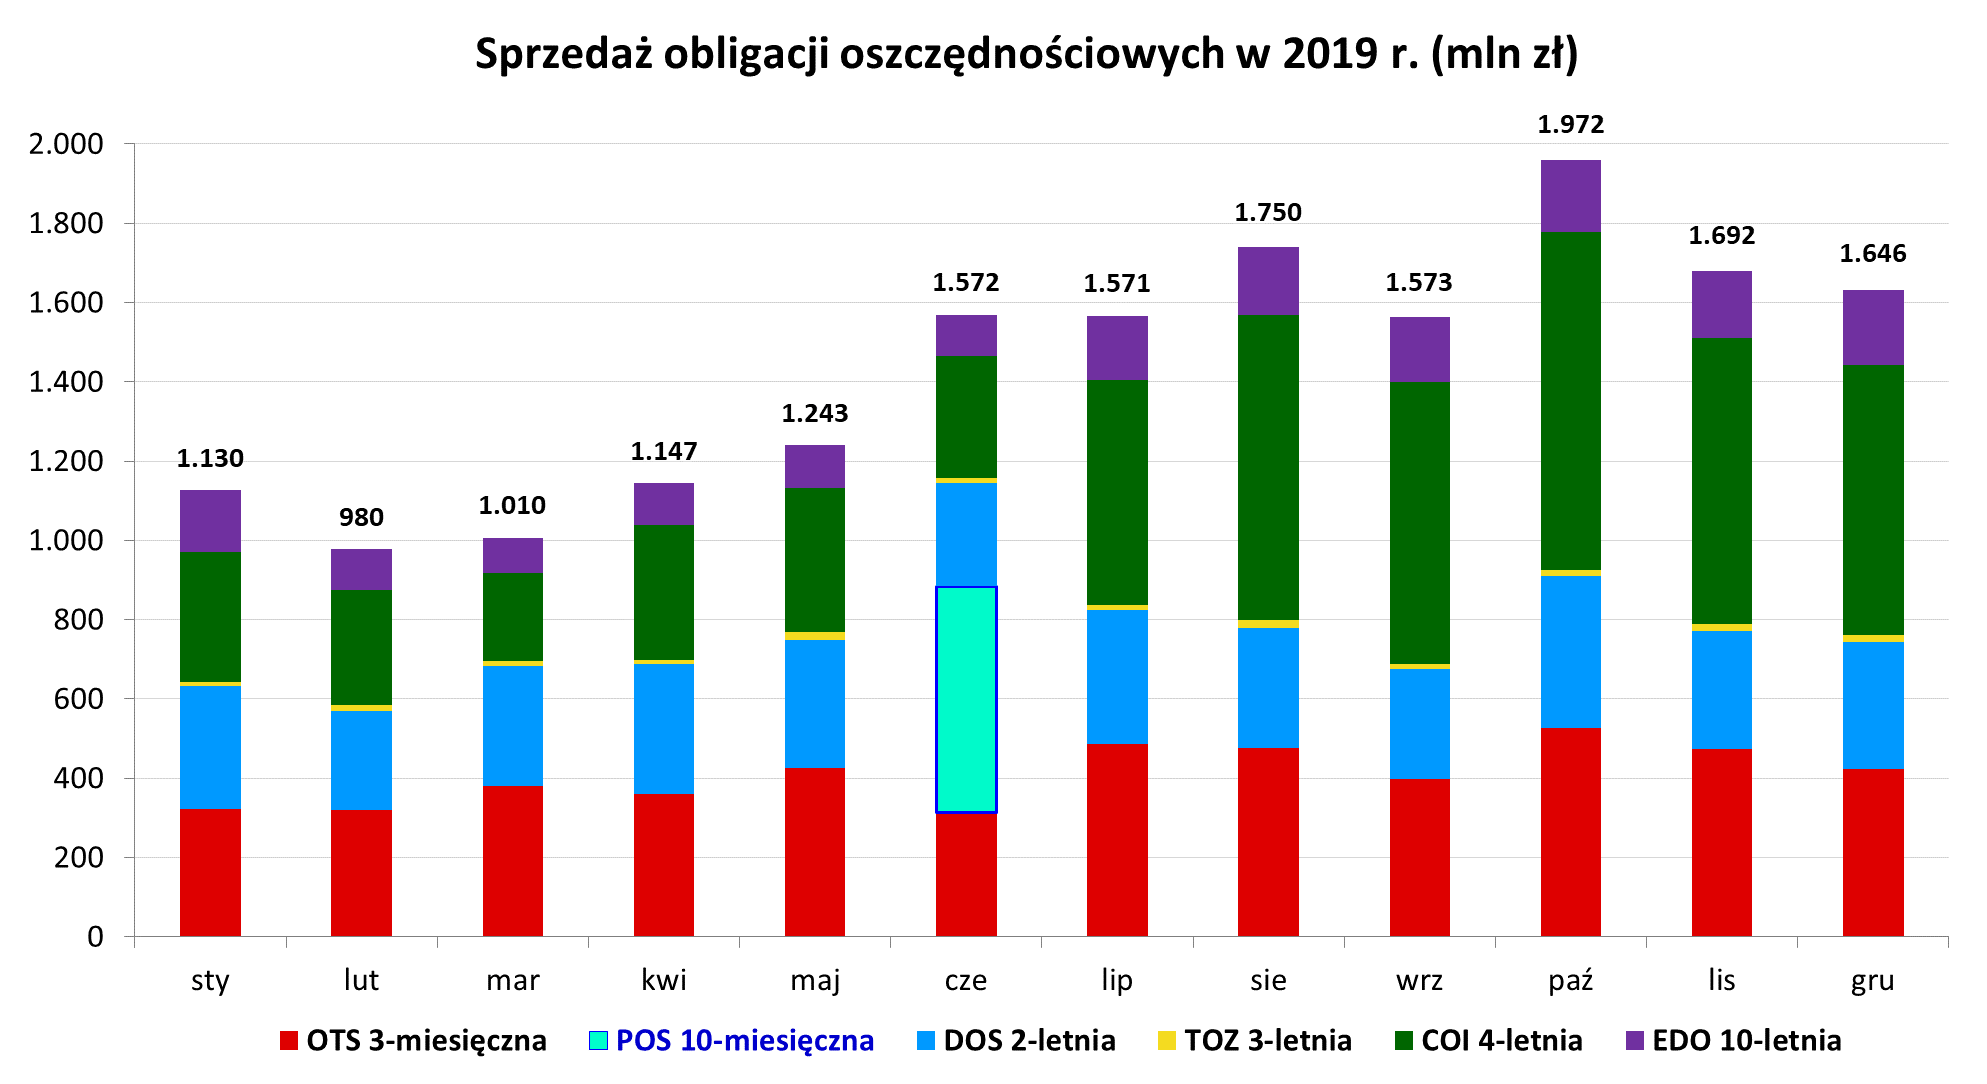 Graf słupkowy przedstawiający sprzedaż obligacji oszczędnościowych w 2019 r. (mln zł)